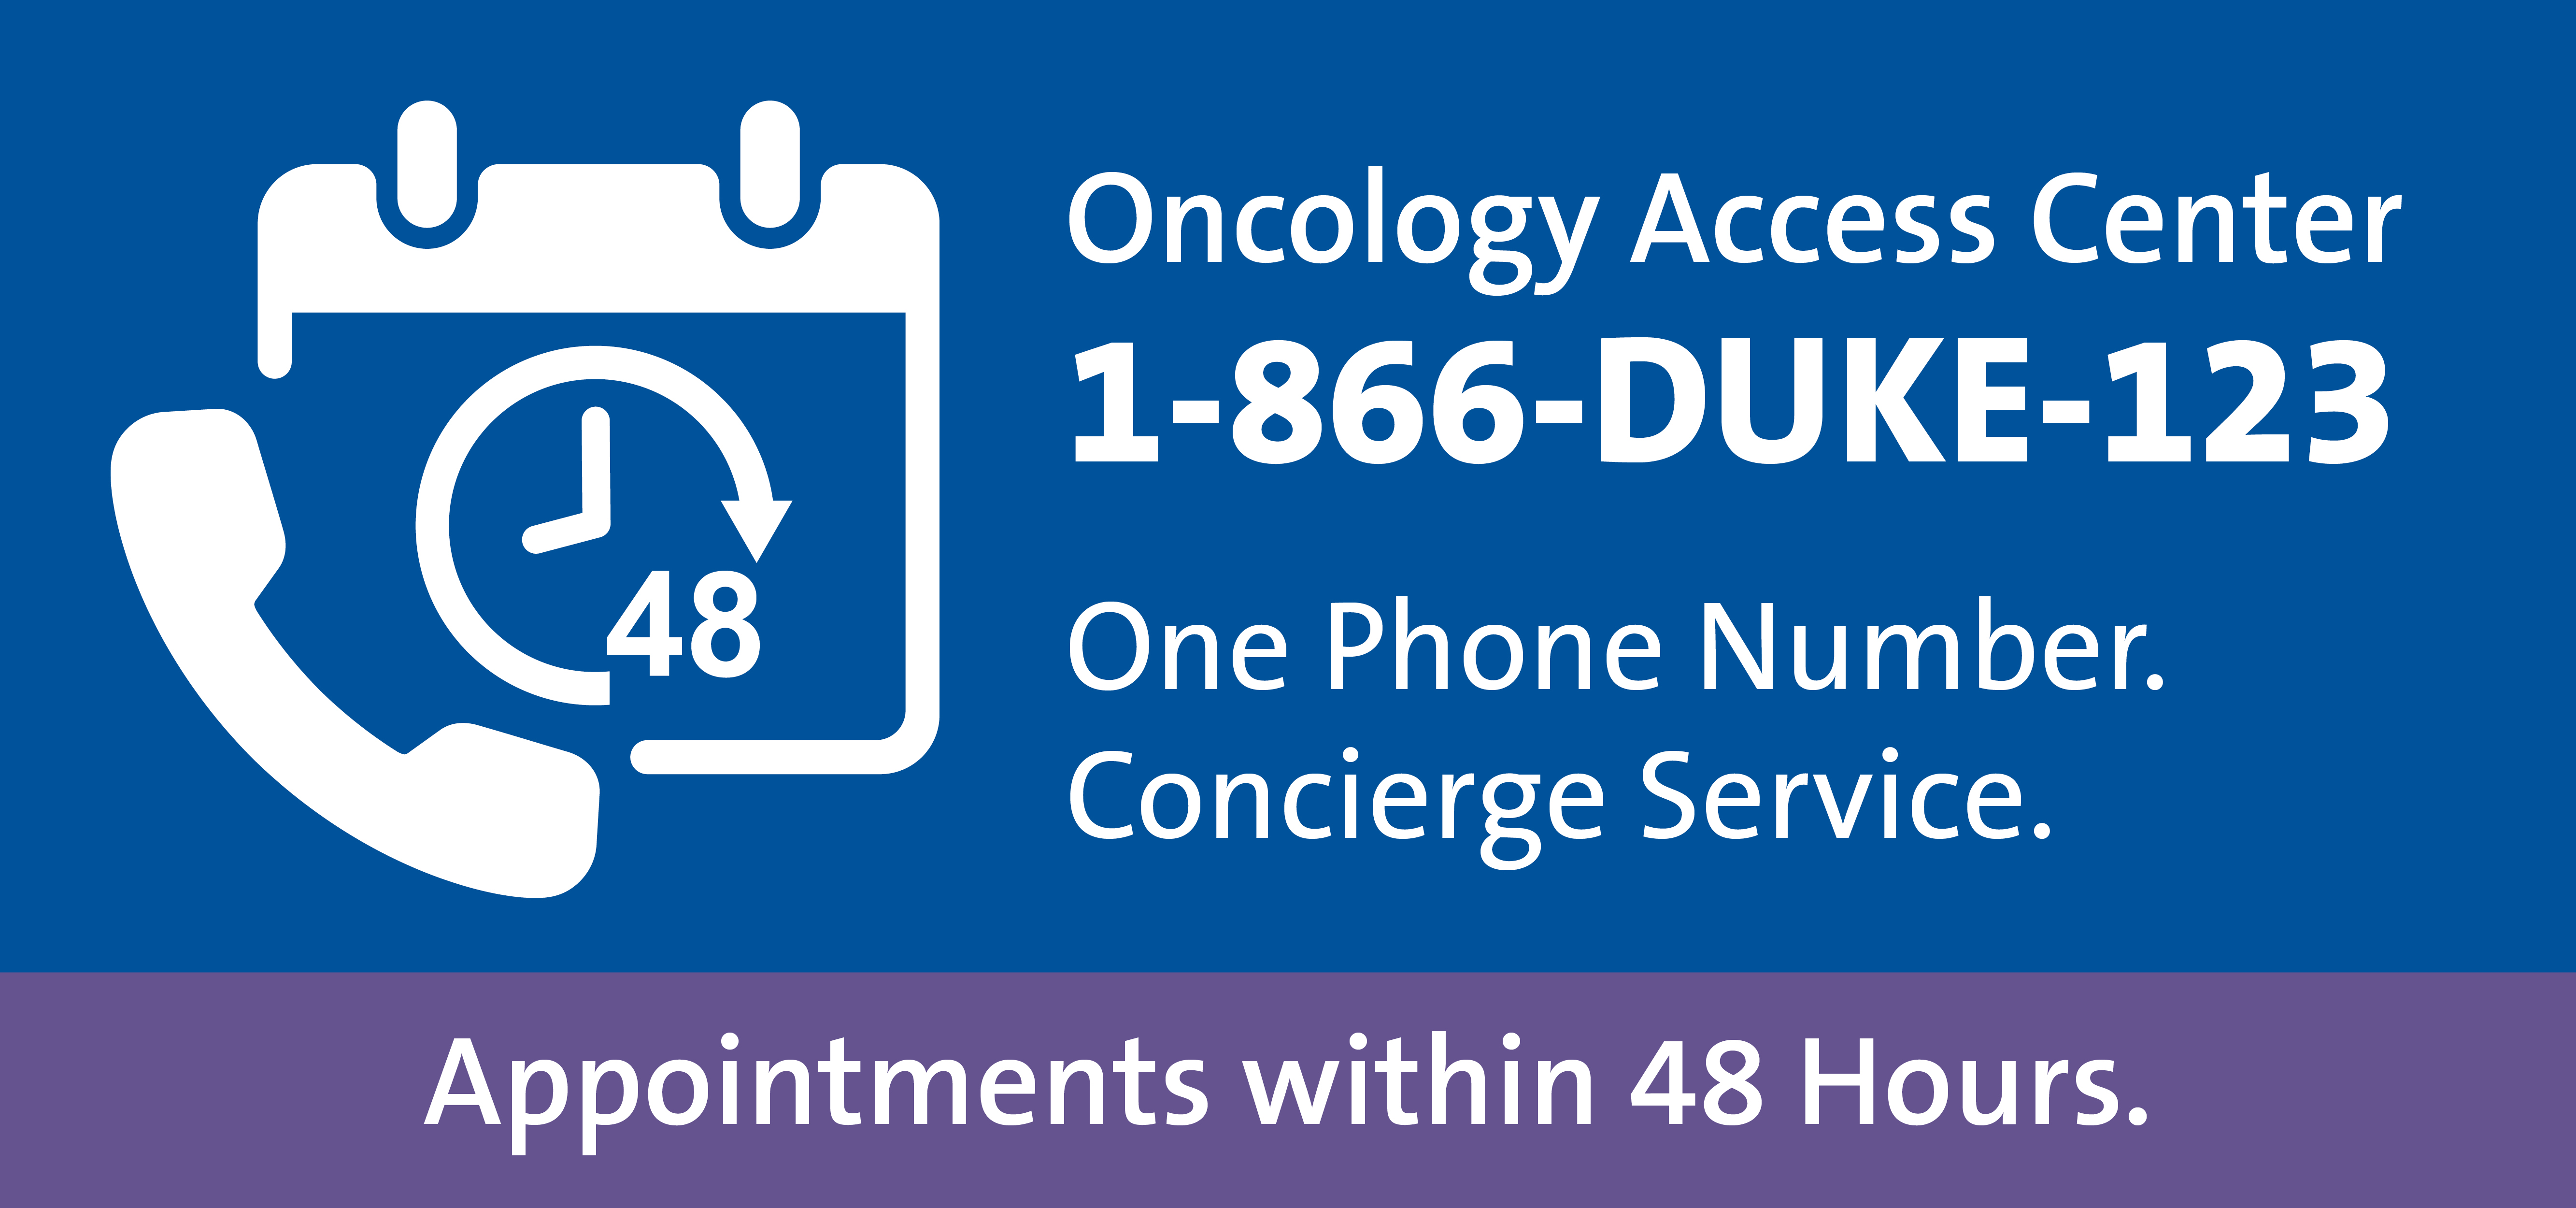 Call Duke Oncology Access Center at 1-866-DUKE-123